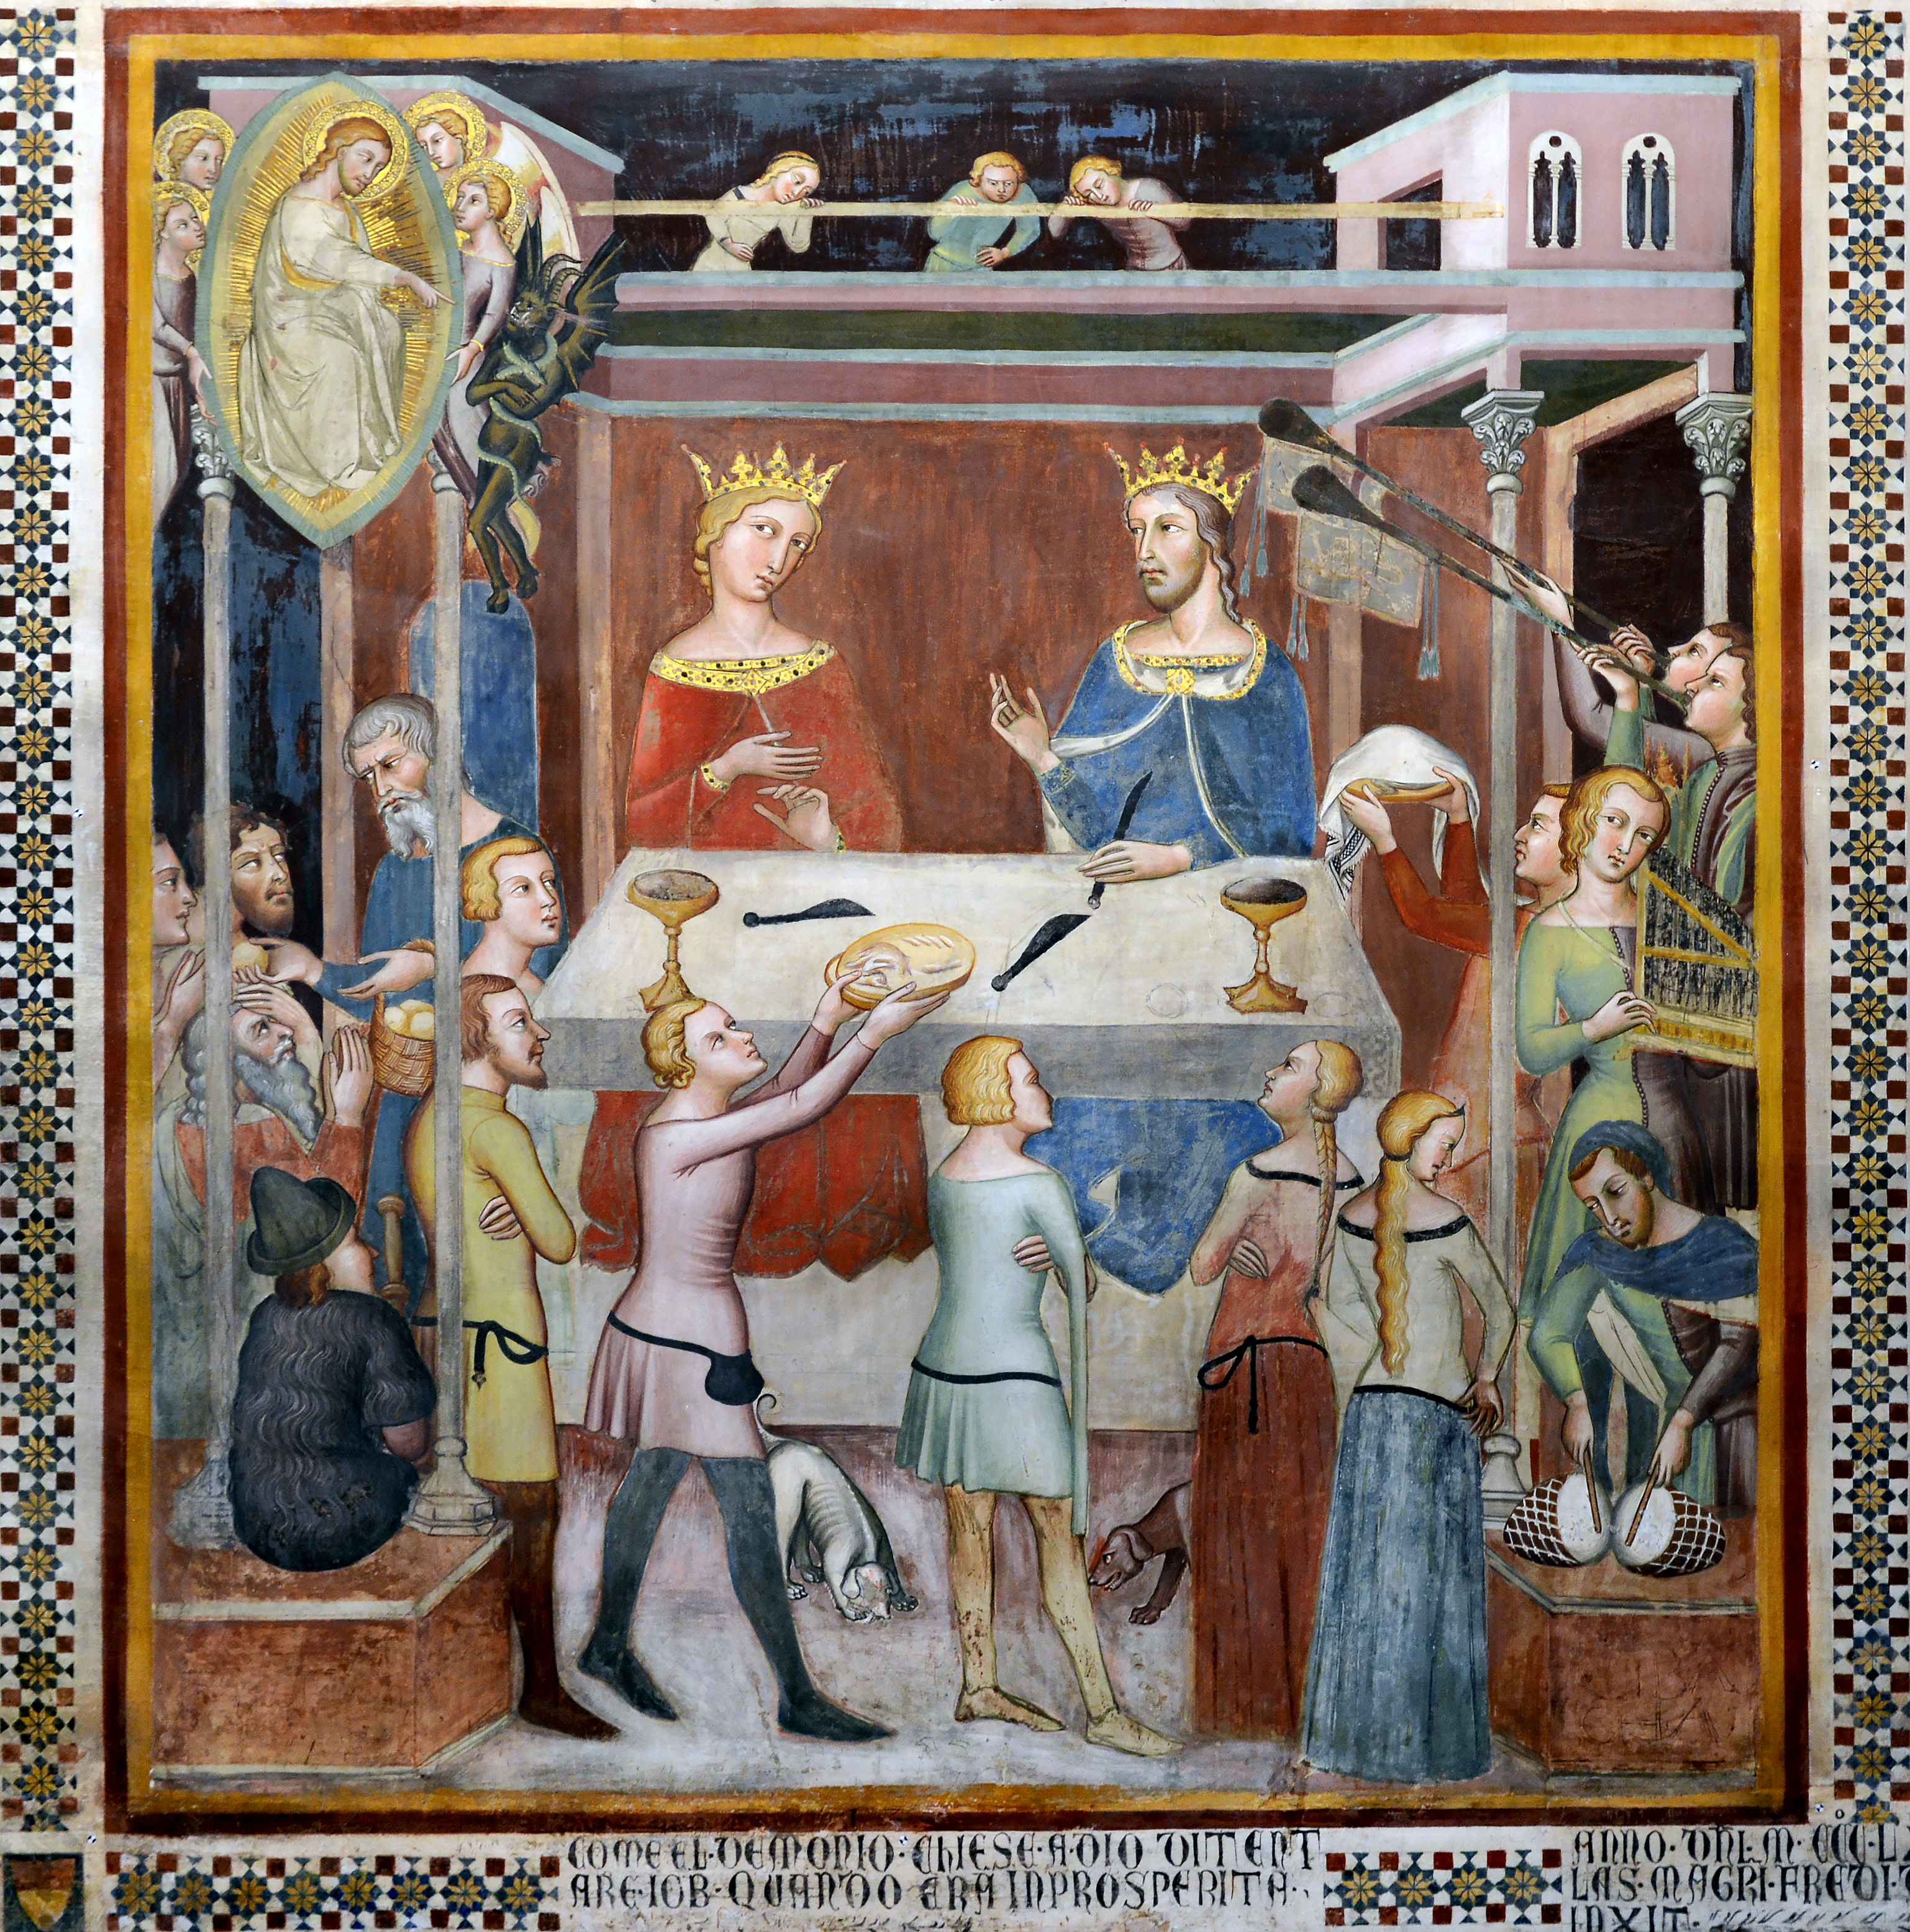 The Devil bargains with God over Job's faith in Duomo (San Gimignano)